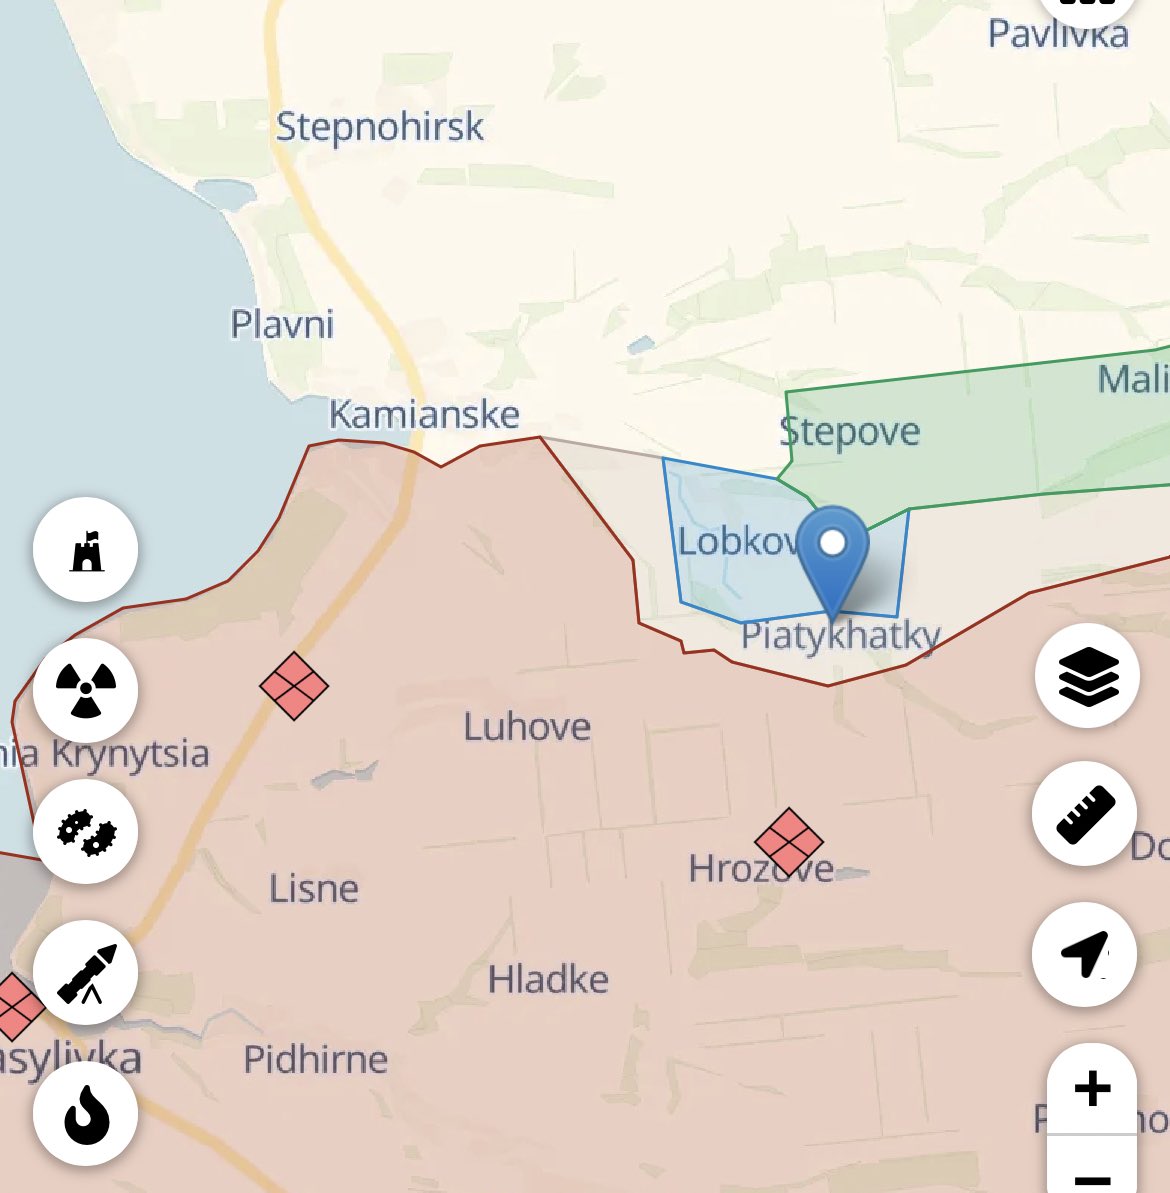 Malyar confirmed liberation of Piatykhatky. As of now Tavria groop of troops liberated 8 settlements: Novodarivka, Levadne, Storozheve, Makarivka, Blagodatne, Lobkove, Neskuchne, and Piatykhatky.

🇺🇦🇺🇦🇺🇦